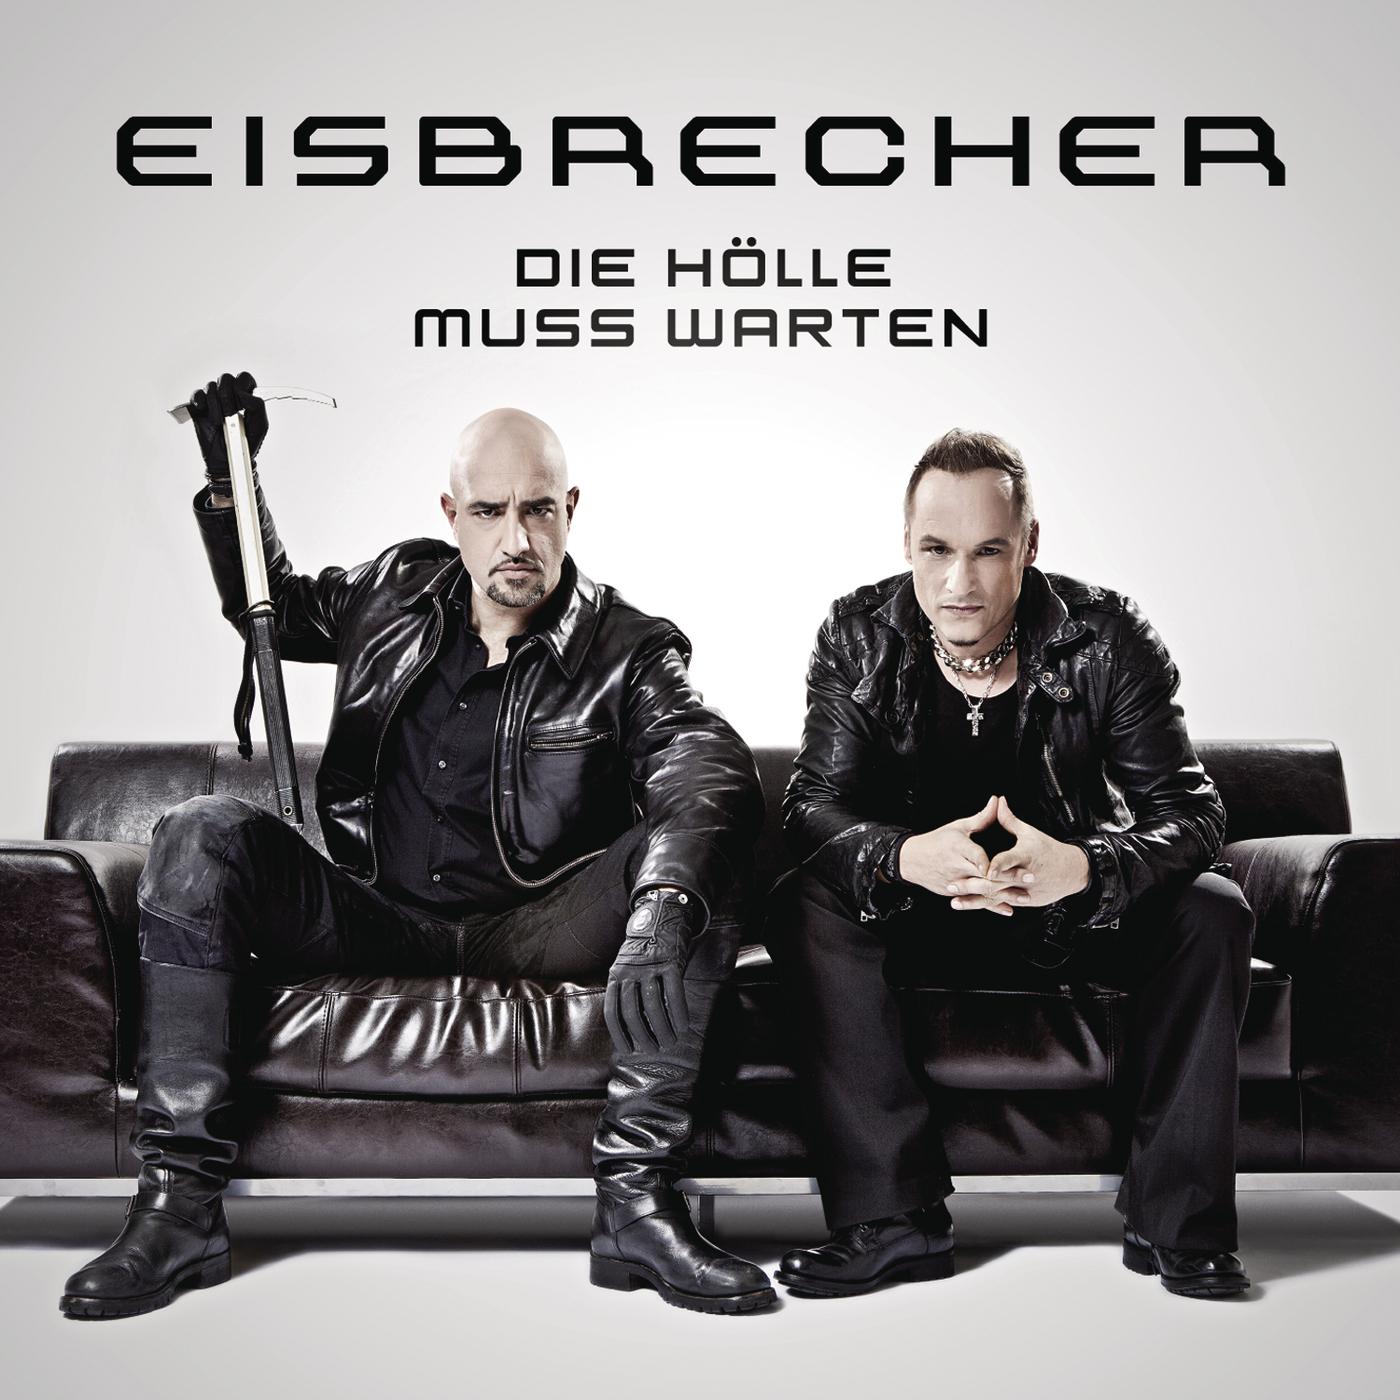 Eisbrecher rot. Группа Eisbrecher. Солист группы Eisbrecher. Обложки группы Eisbrecher. Eisbrecher барабанщик.